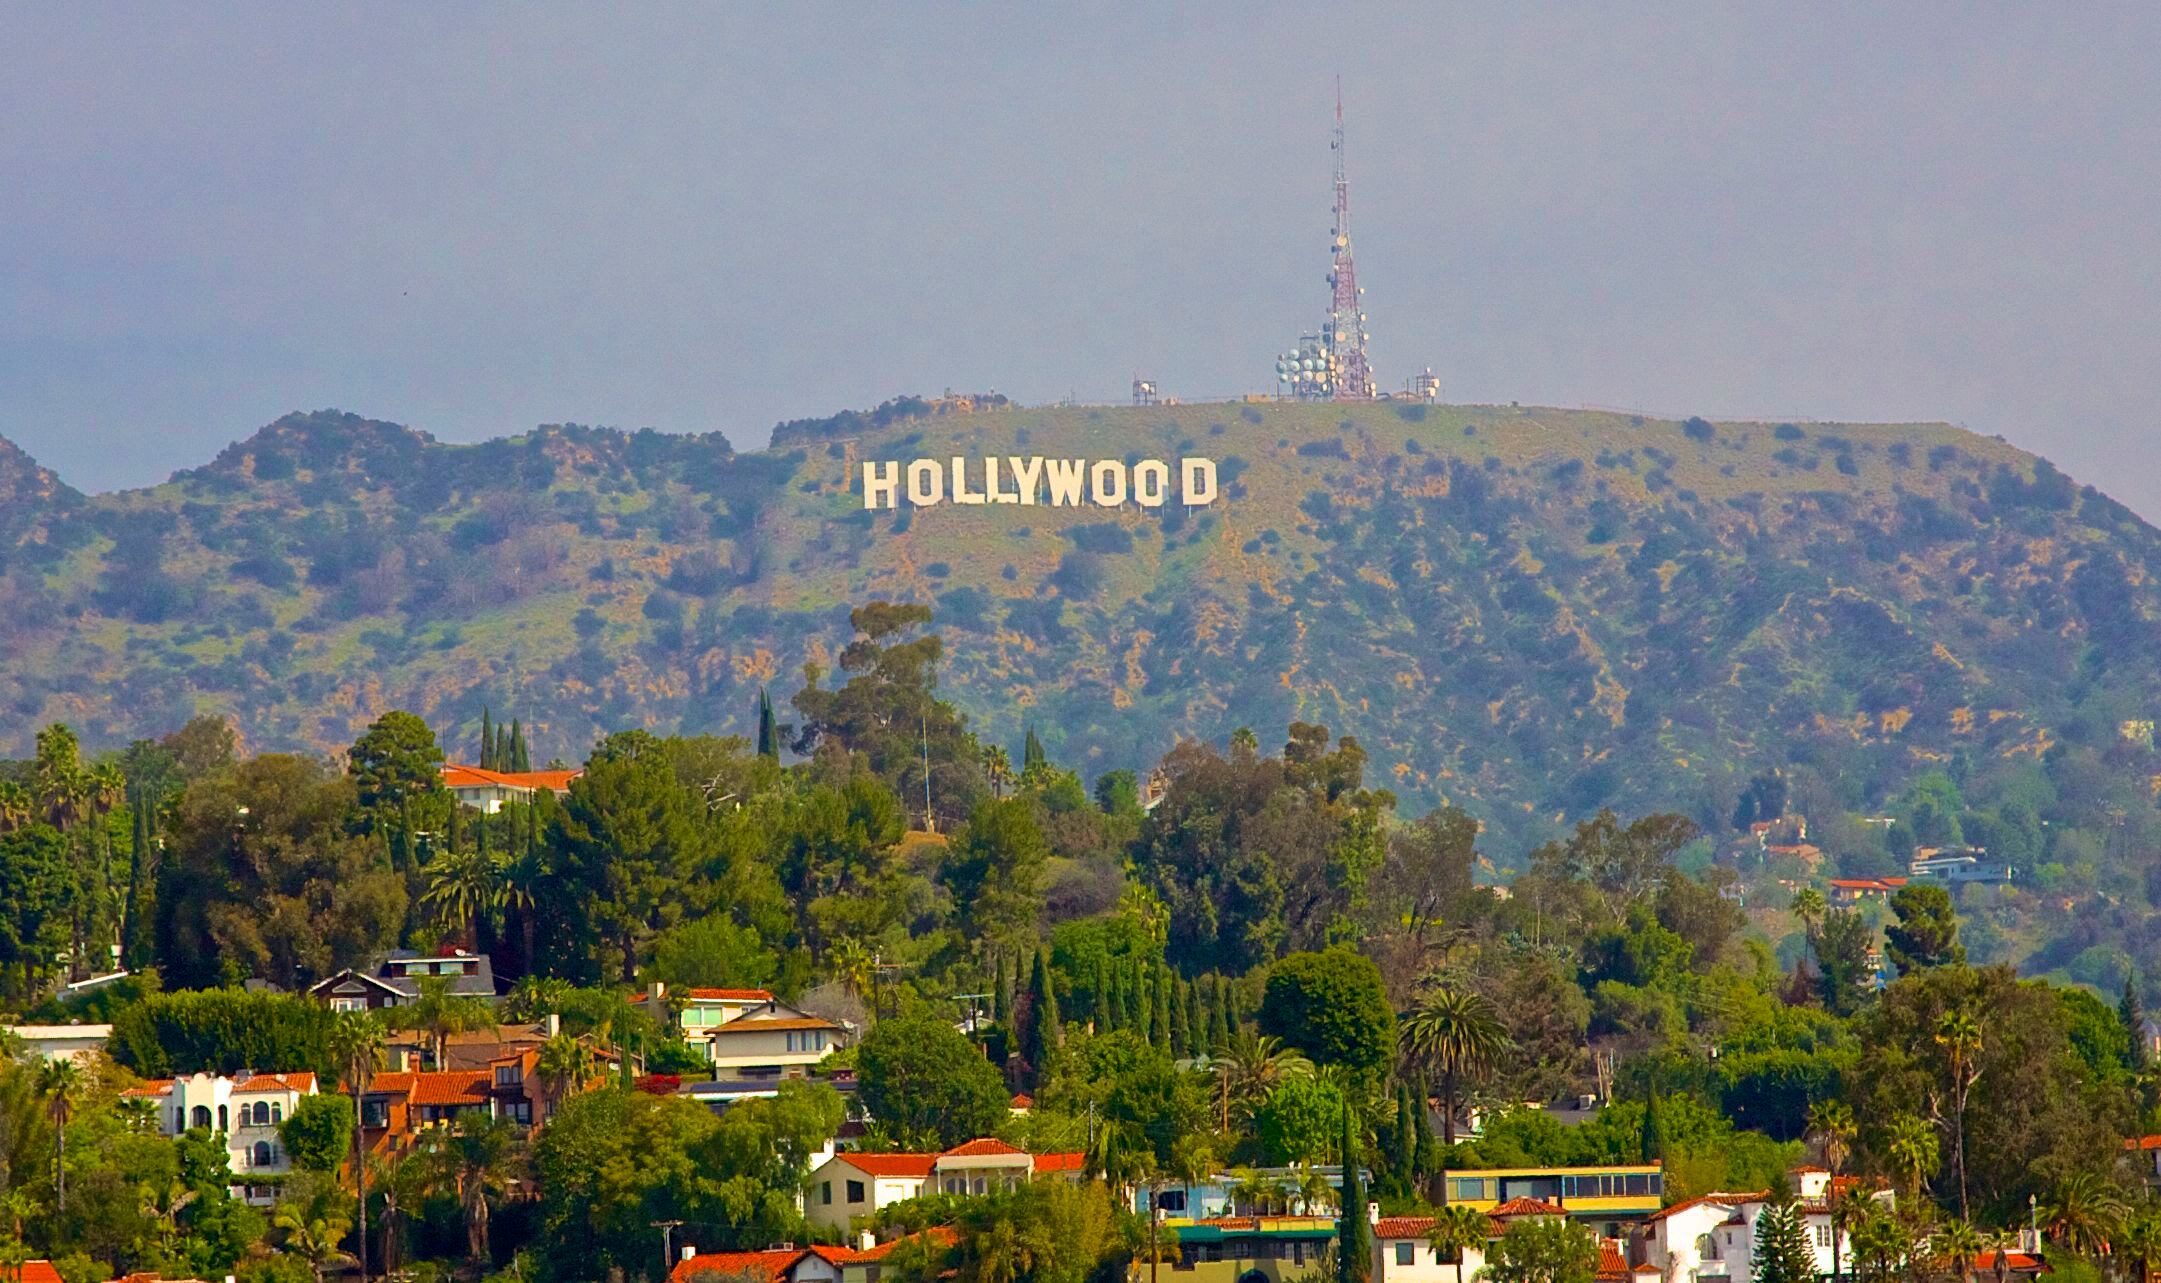 Vista del famoso cartel de Hollywood en Los Ángeles.